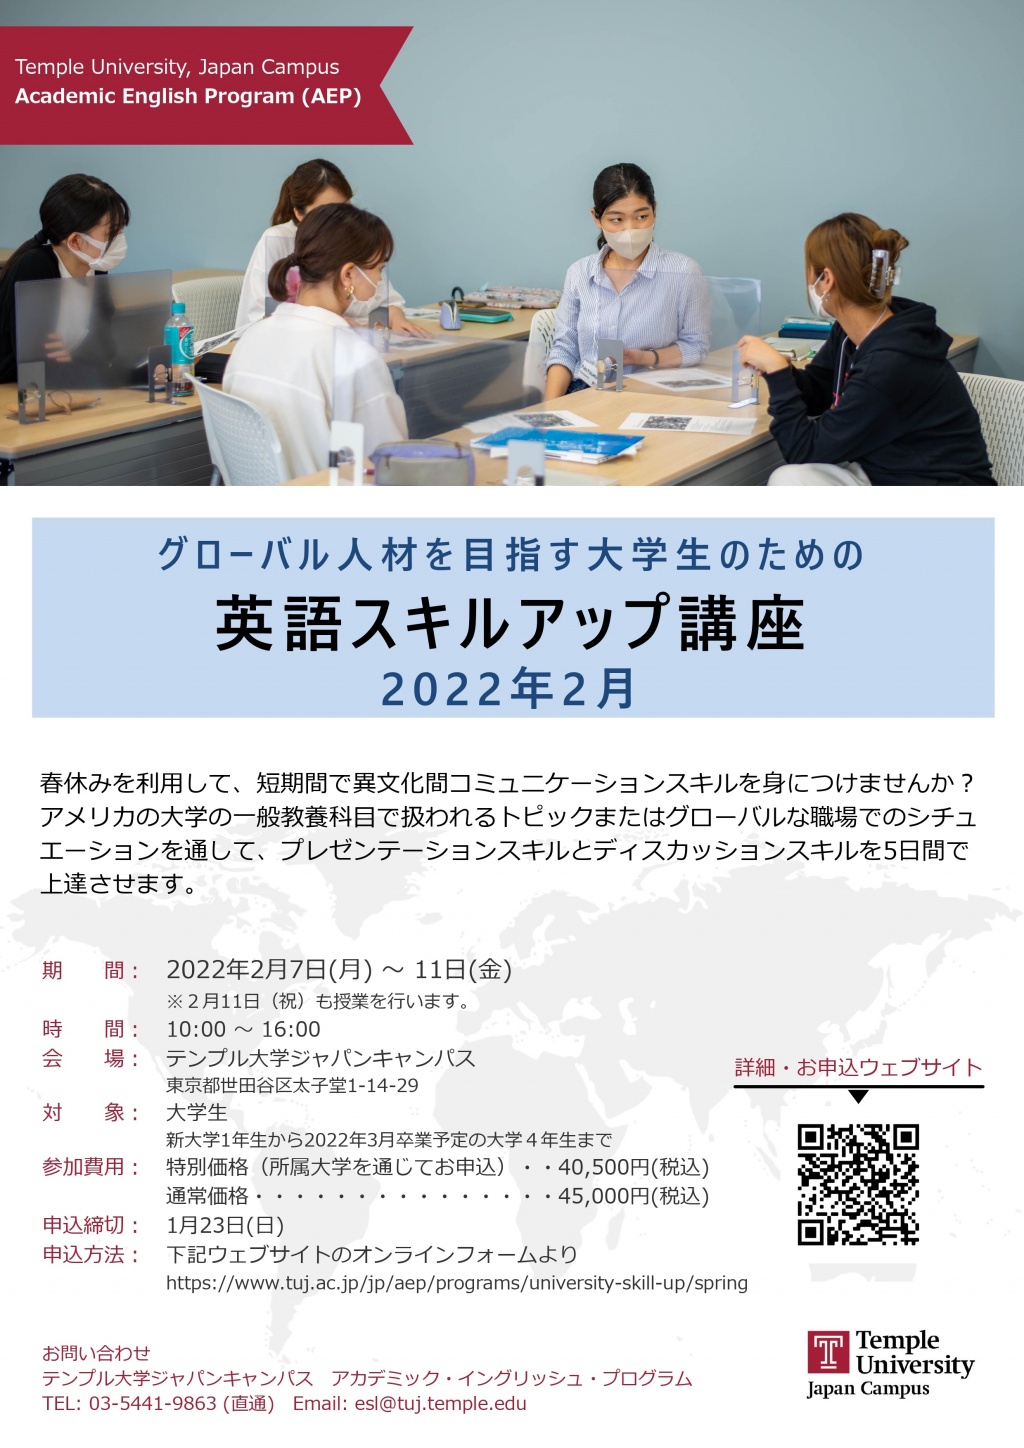 2022年春学期「グローバル人材を目指す大学生のための英語スキルアップ講座 (春期)」